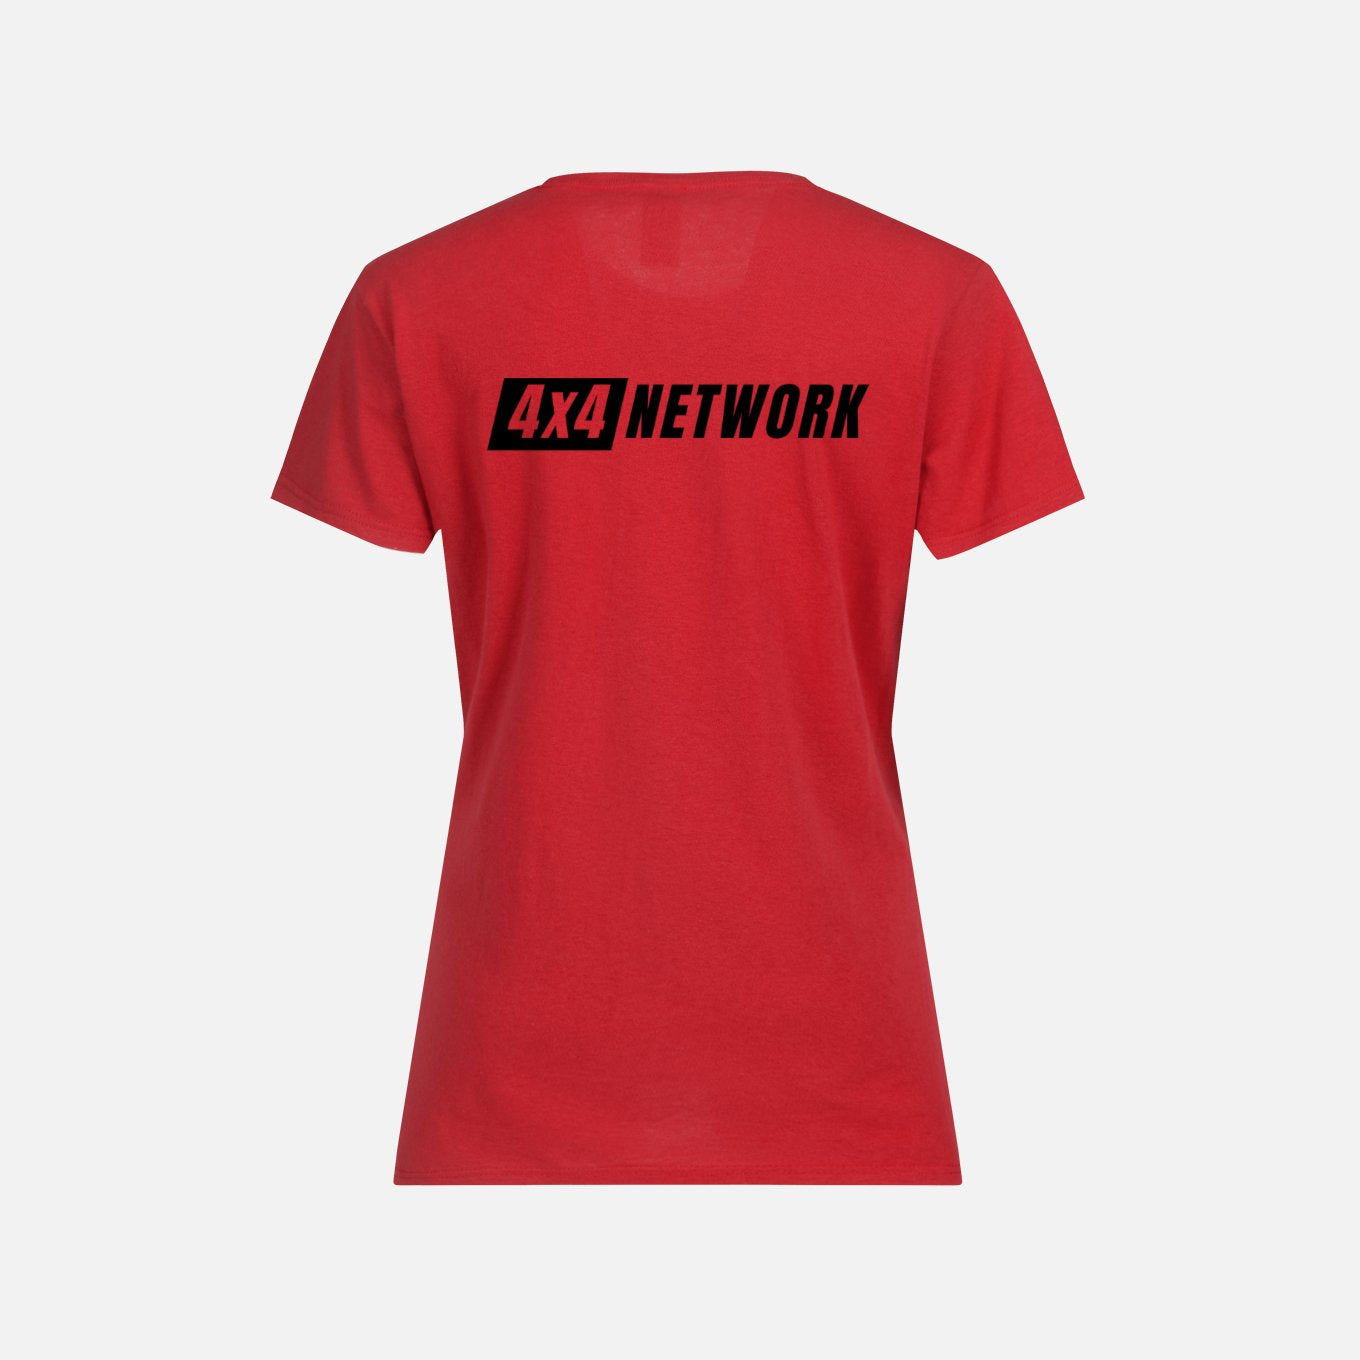 Women’s 4X4 Network Tee-Shirt